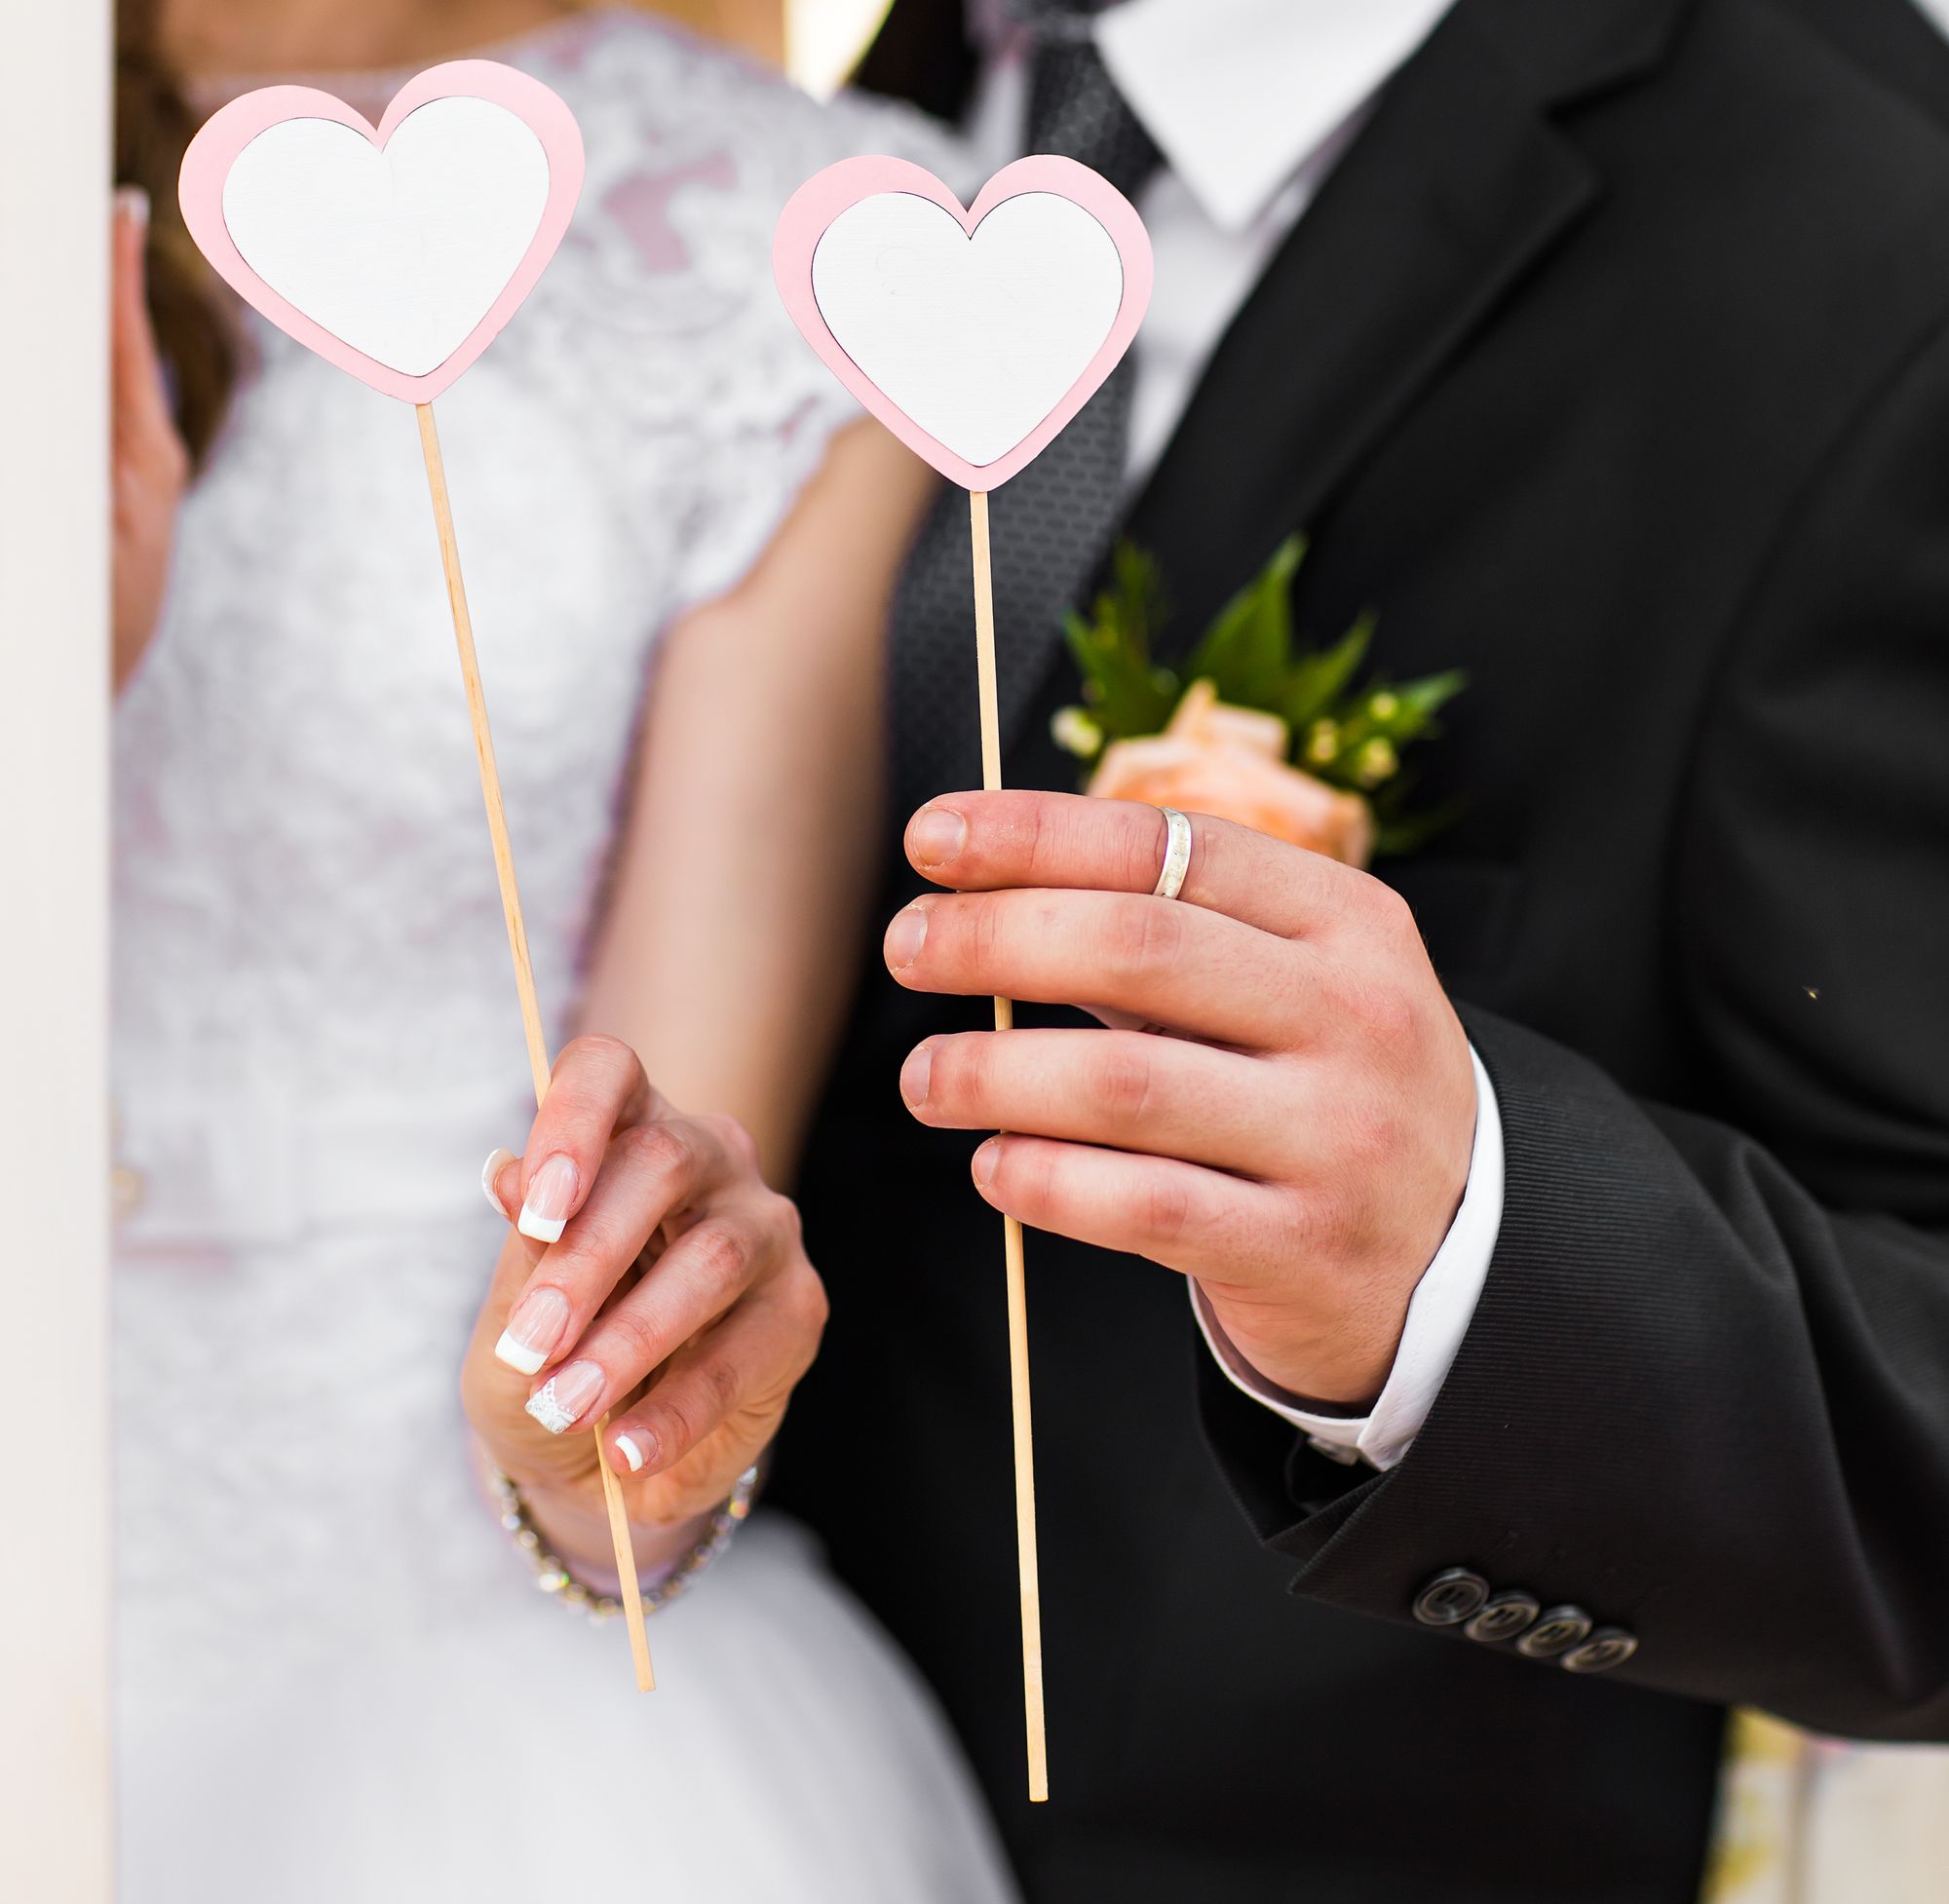 Eine Braut und ein Bräutigam halten herzförmige Stöcke in der Hand.